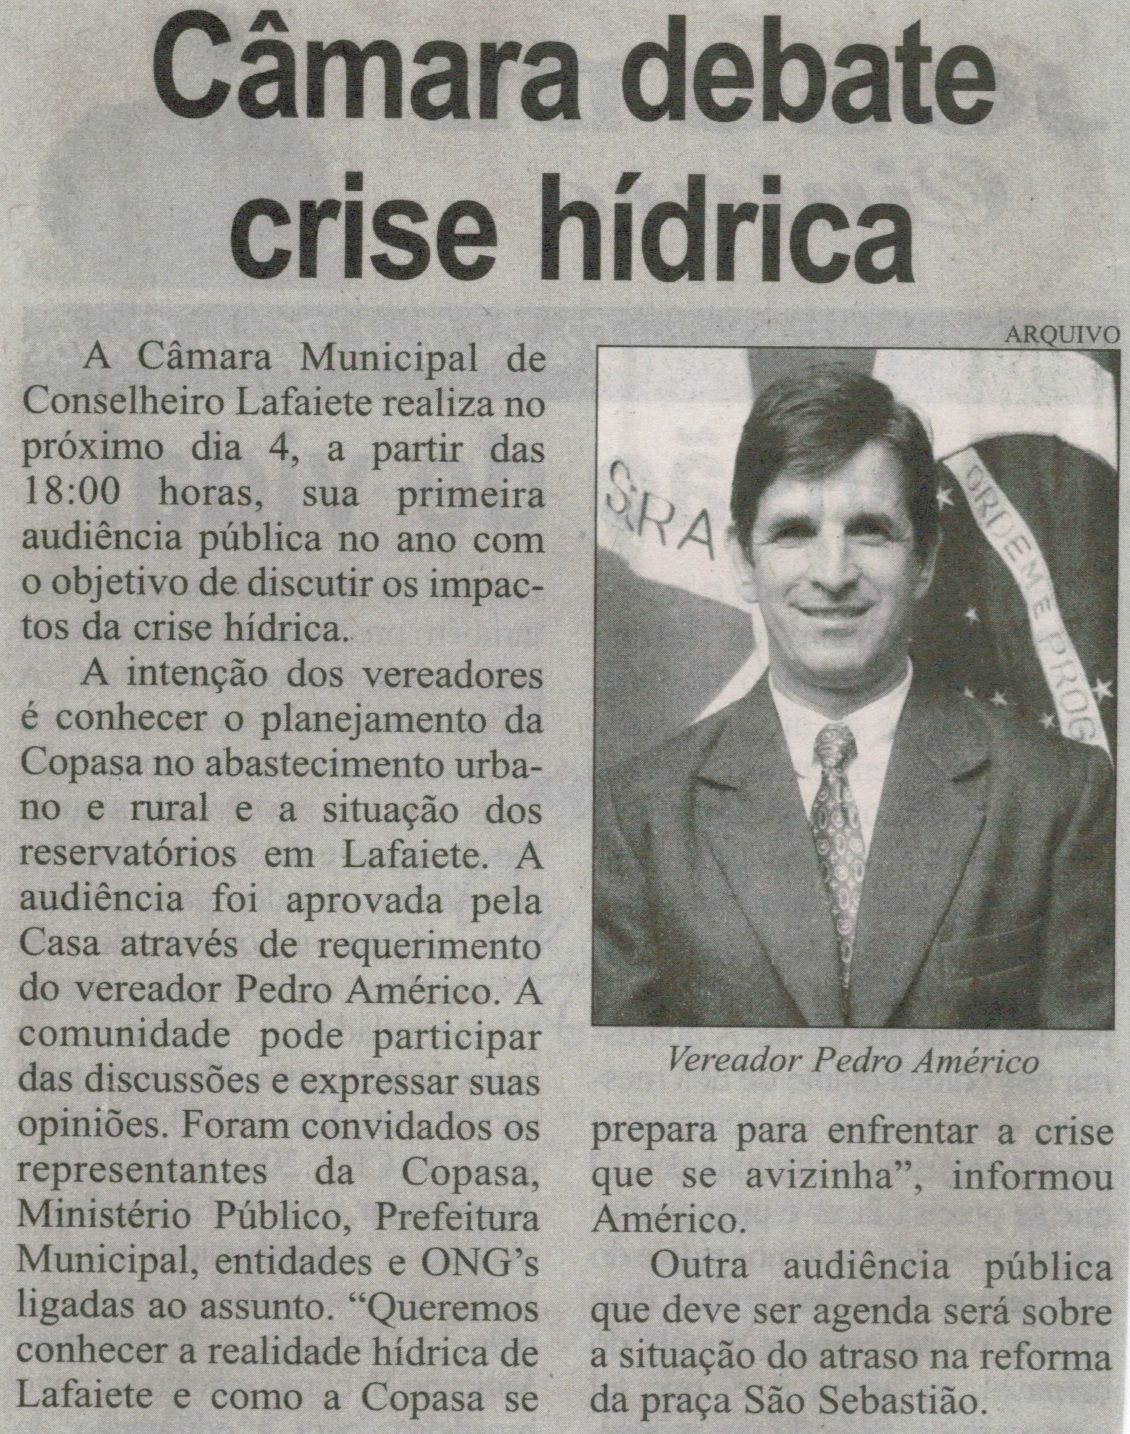 Câmara debate crise hídrica. Correio de Minas, Conselheiro Lafaiete, 28 fev. 2015, p. 06.